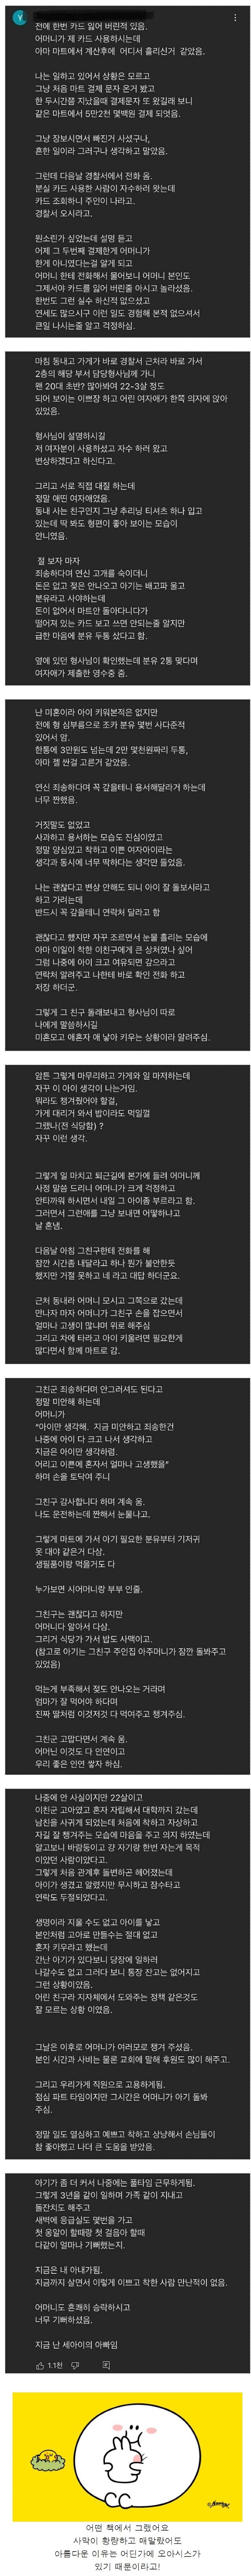 nokbeon.net-카드 훔친 여자 참교육 썰-1번 이미지